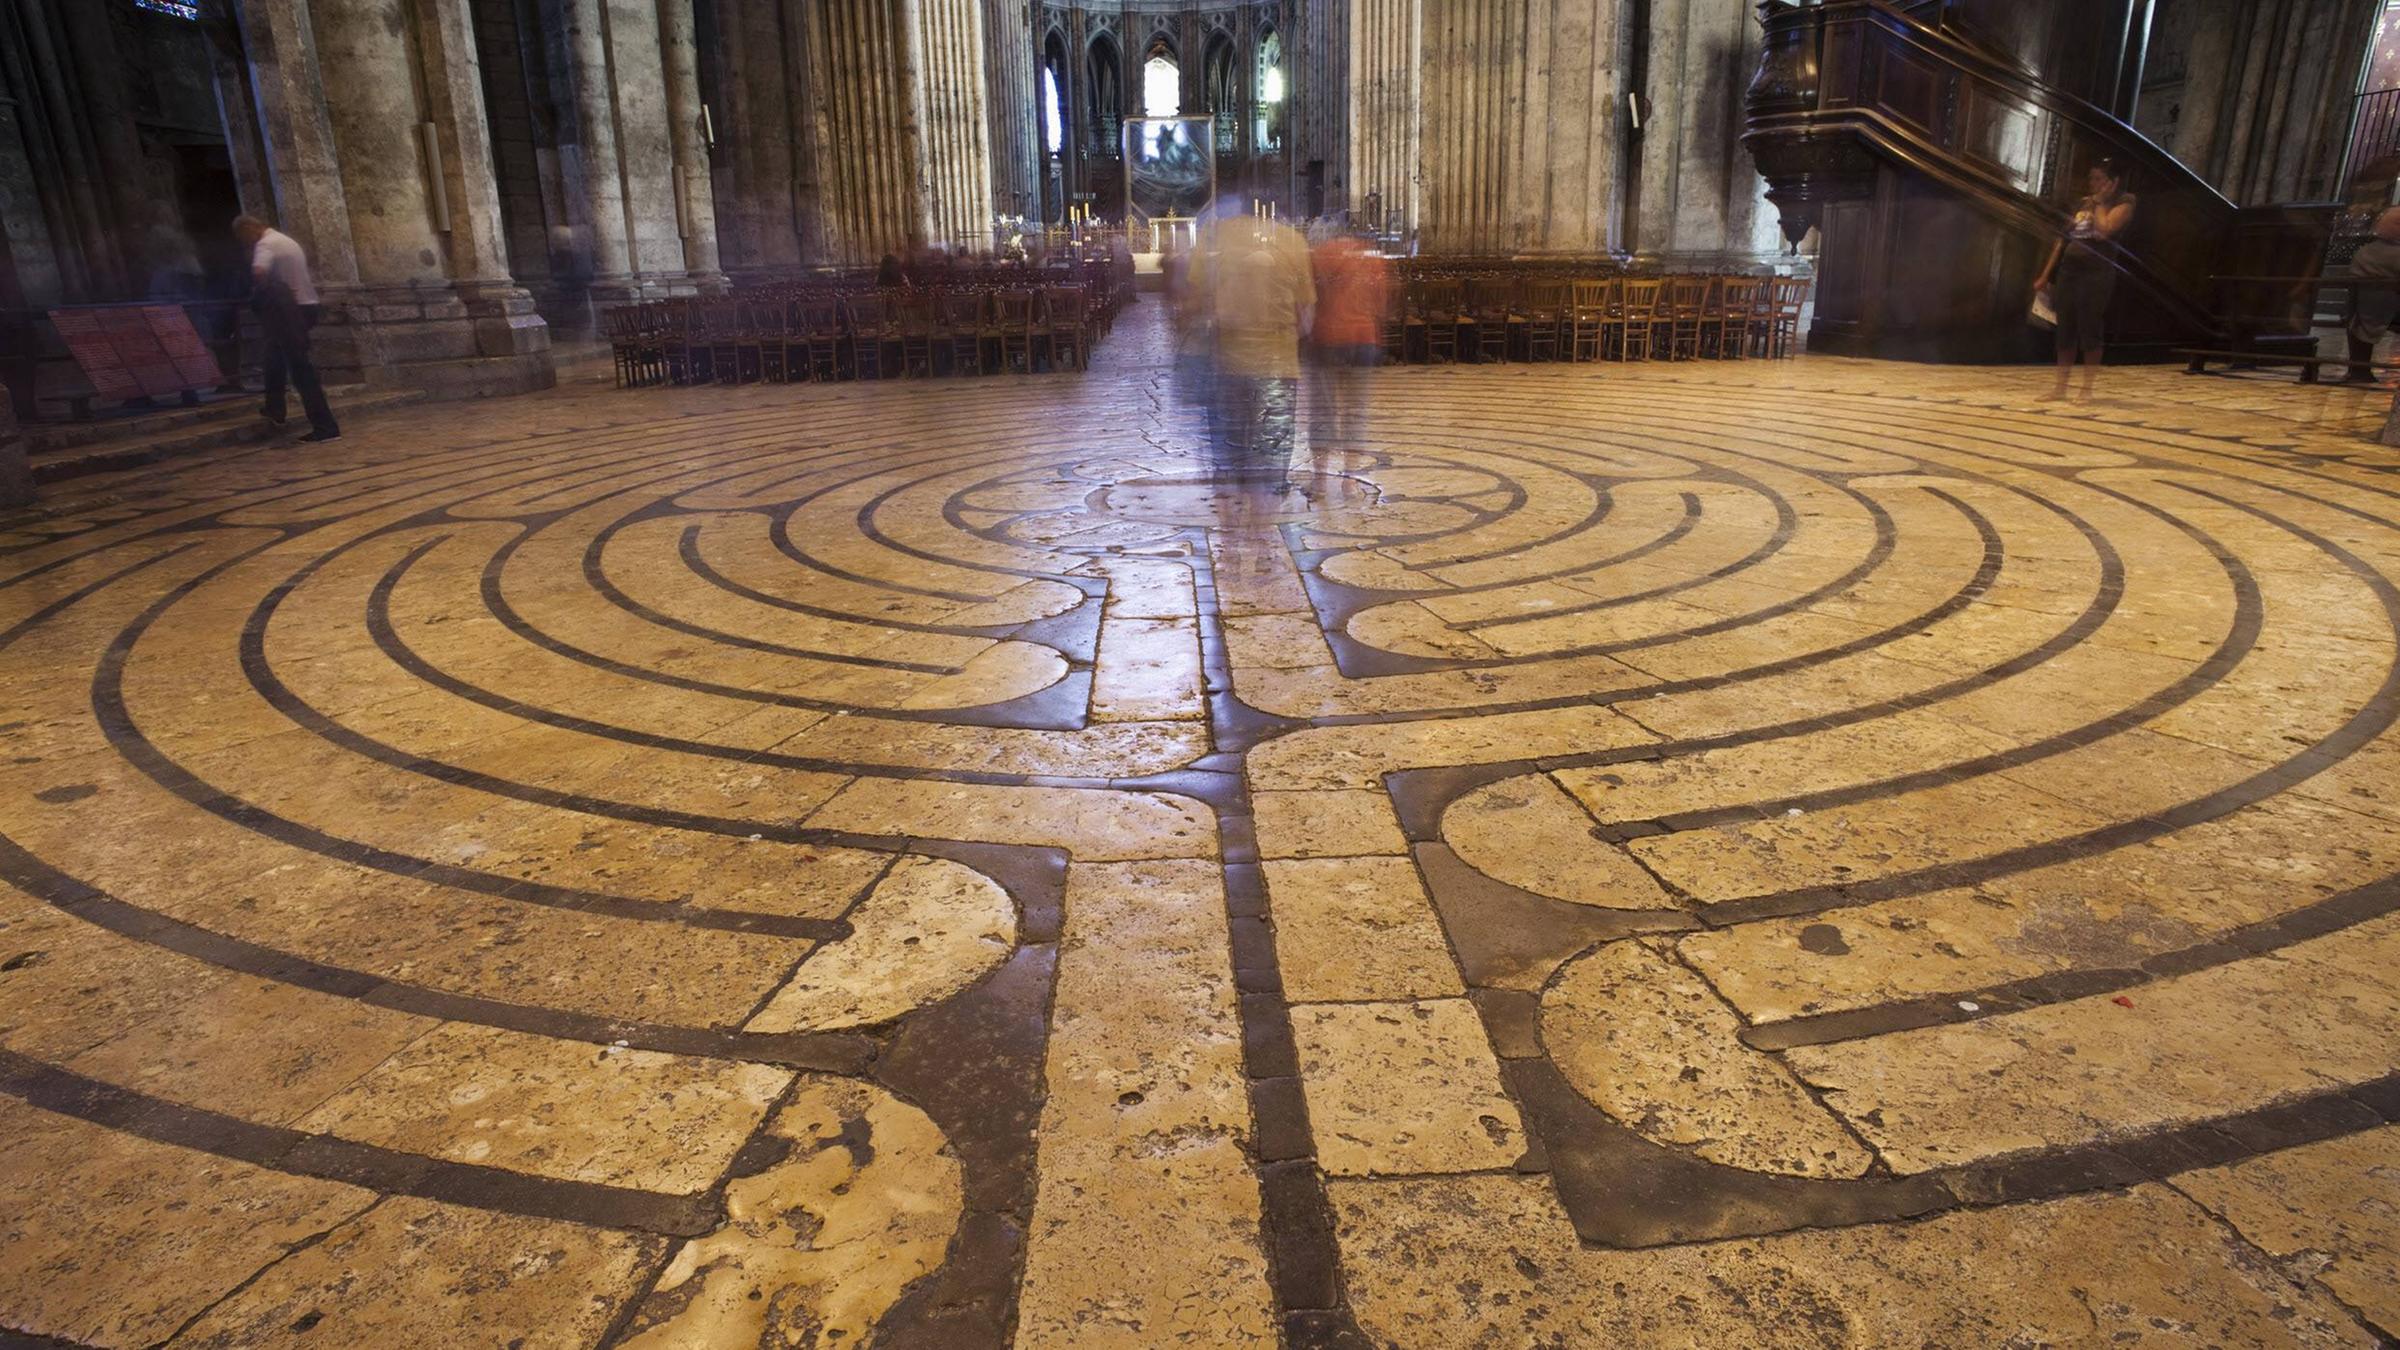 Das Foto zeigt das im Steinboden der Kathedrale von Chartres zu sehende...</p>

                        <a href=